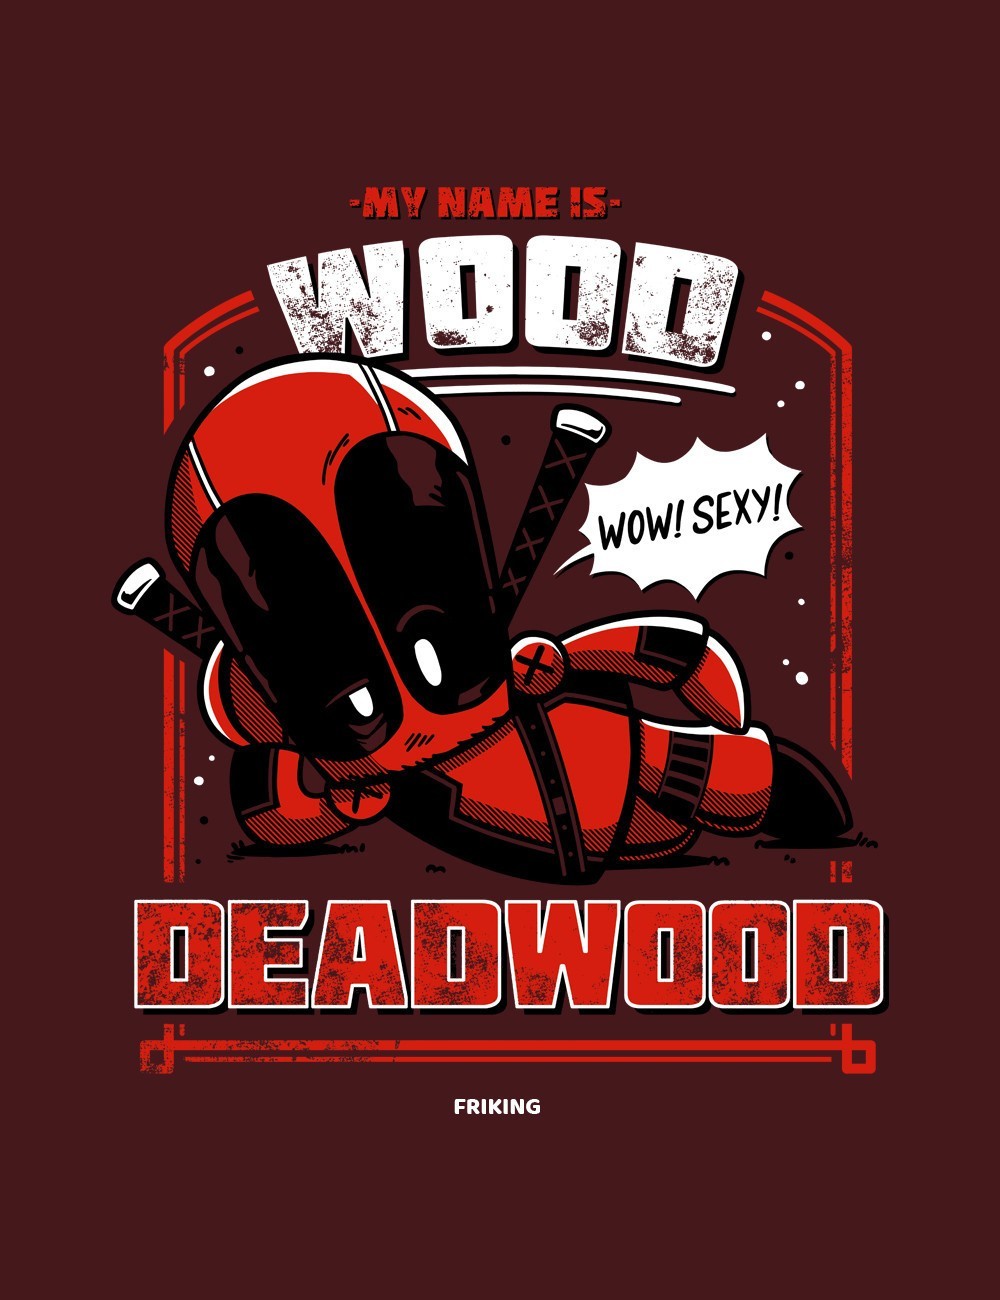  Deadwood 